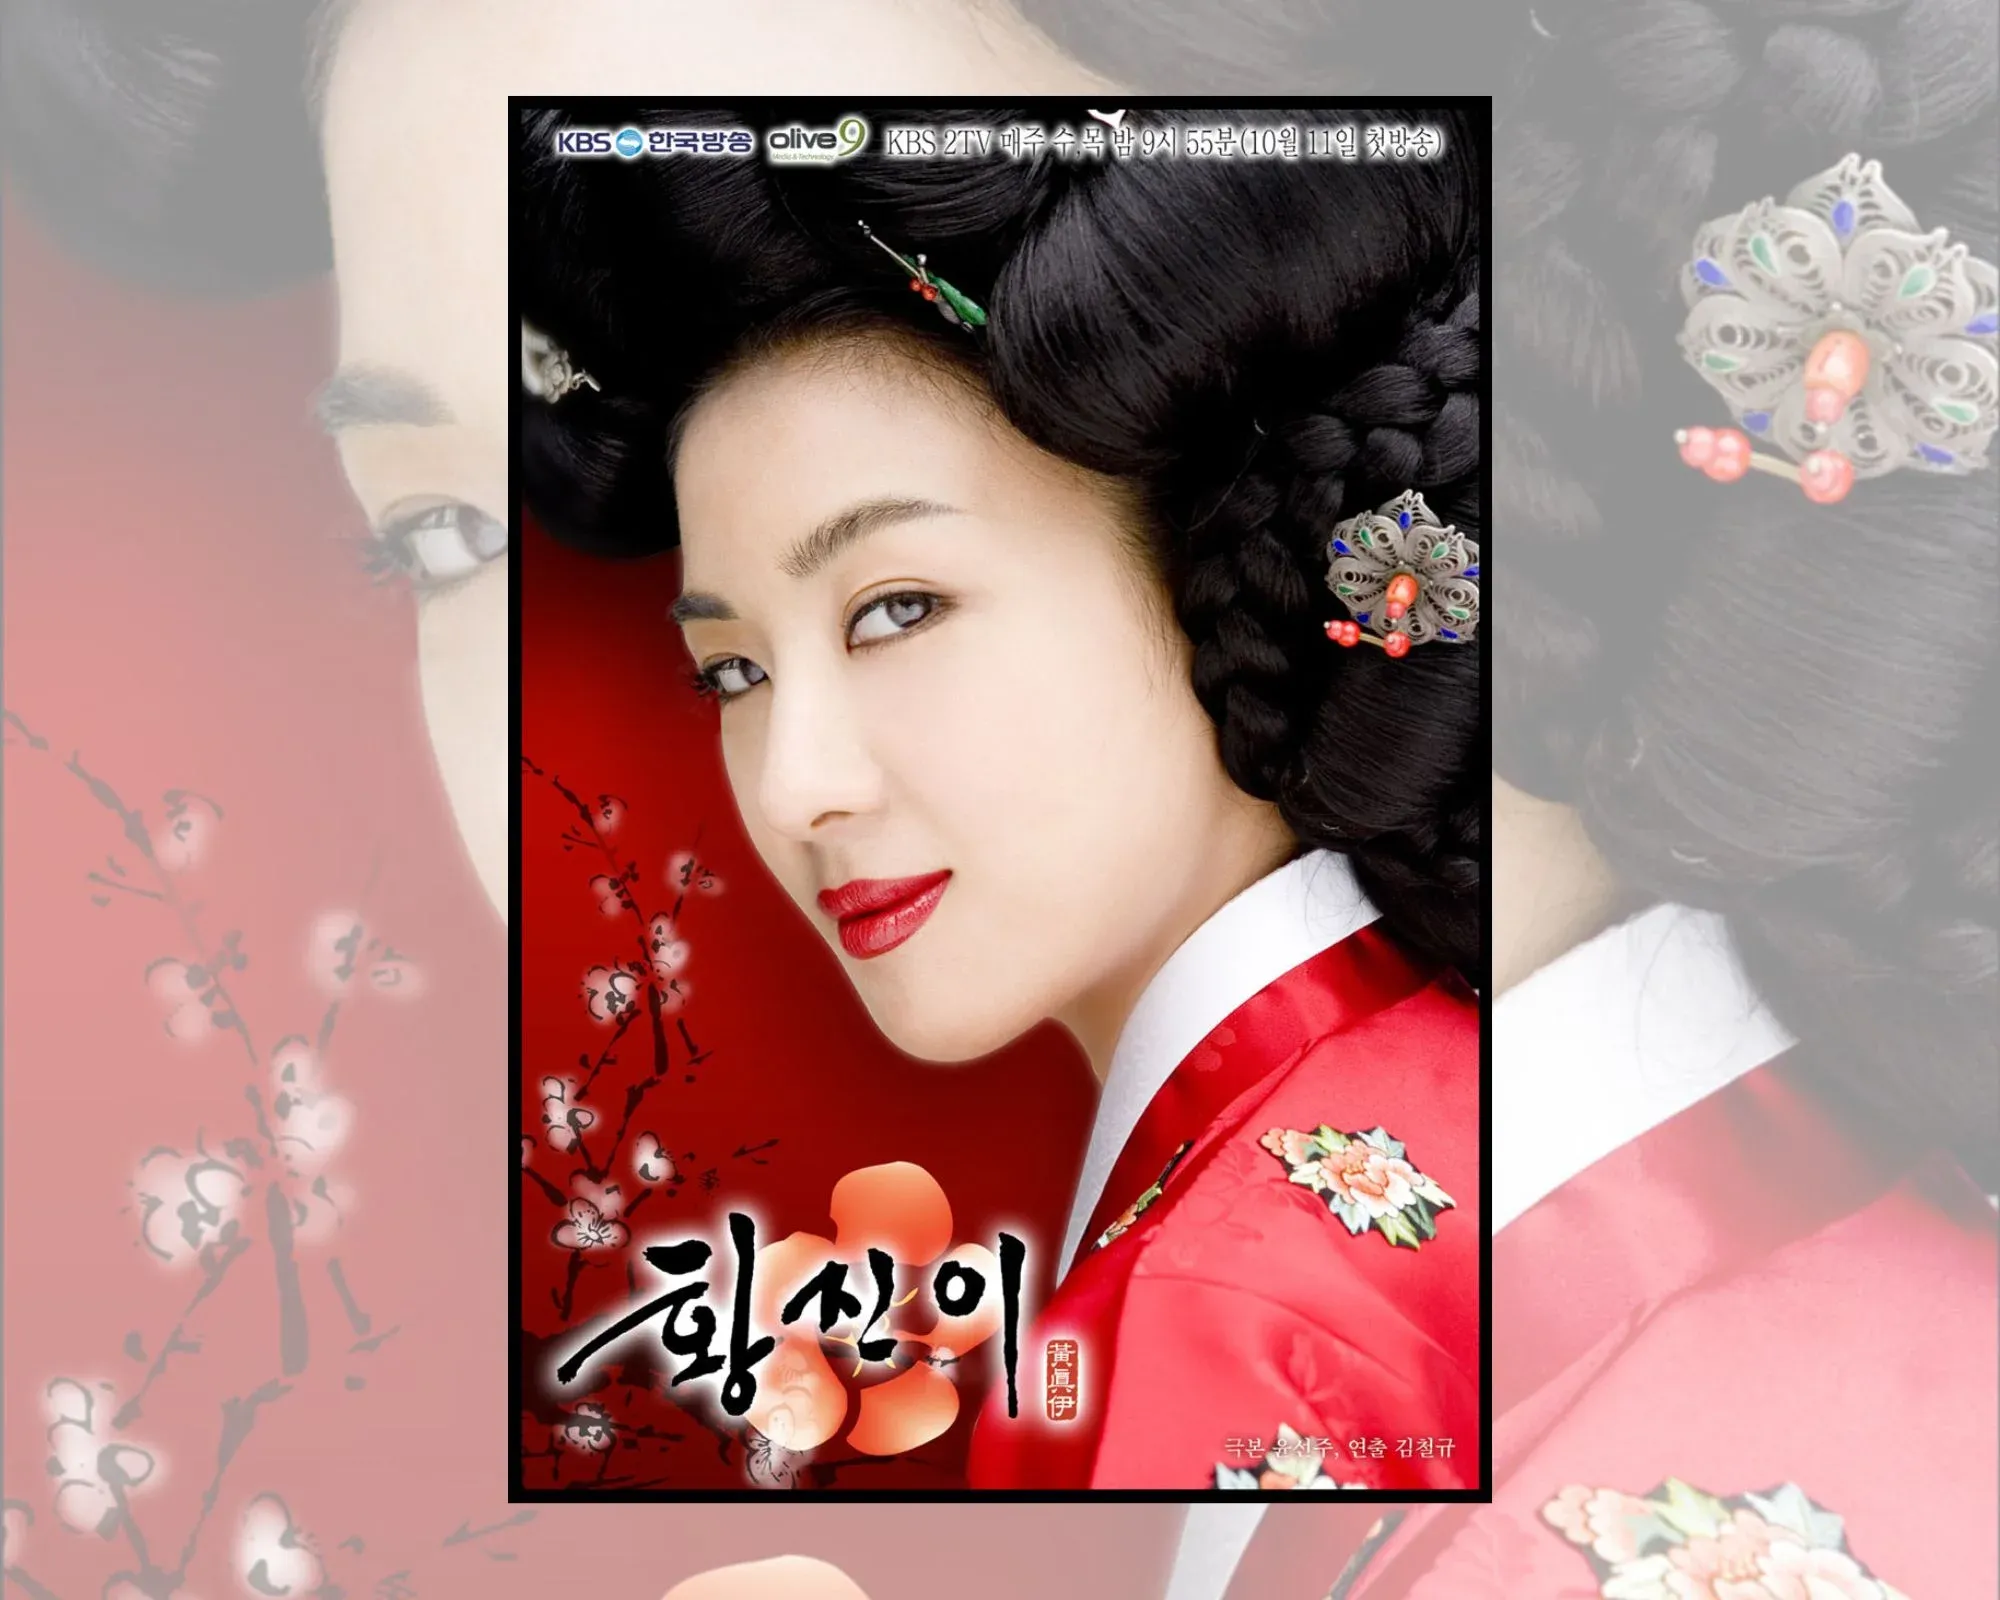 Постер на корейската драма “Хуан Джин-и”, на който се вижда Ха Джи-уон в главната роля.